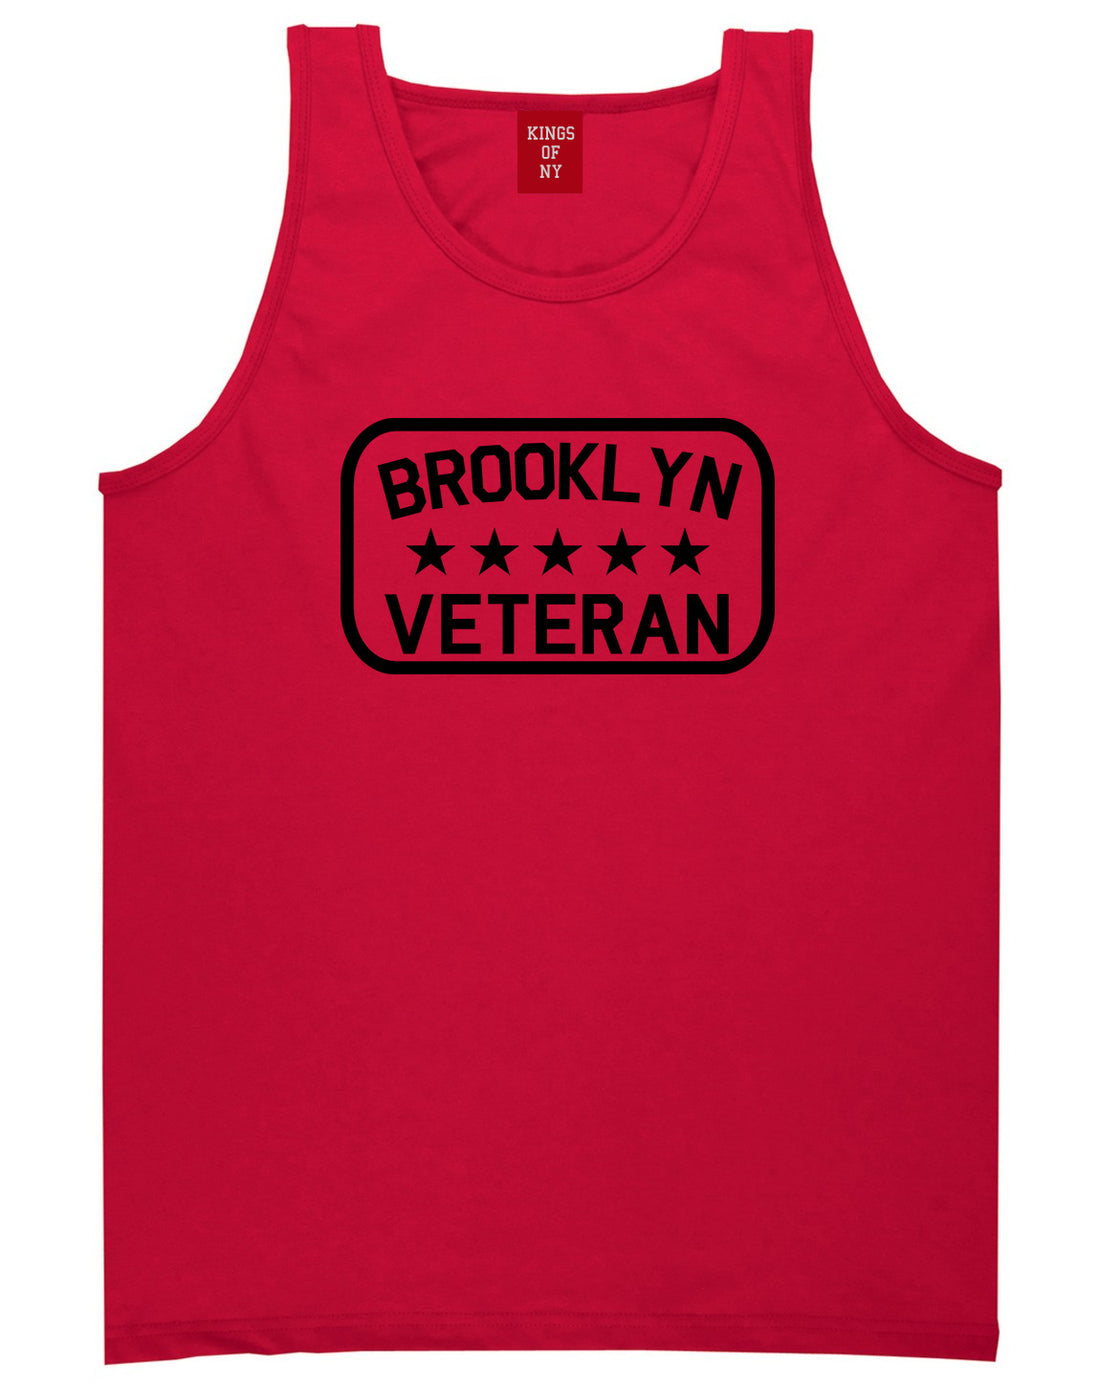 Brooklyn Veteran Mens Tank Top Shirt Red